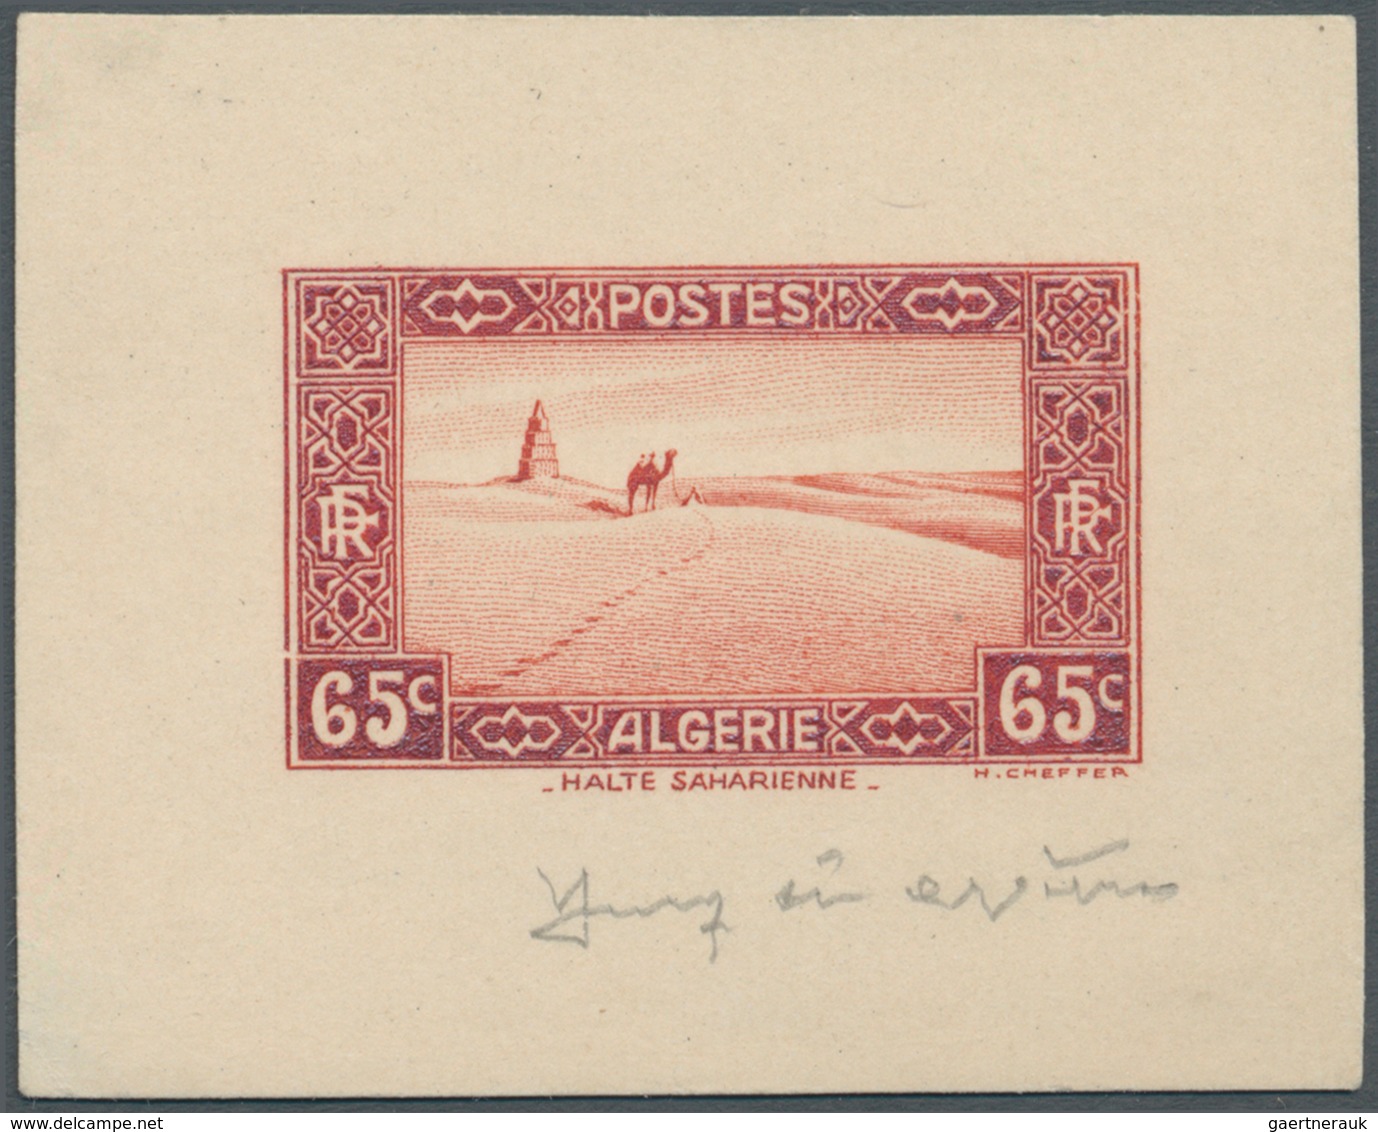 11553 Algerien: 1936, 65c. "Halte Saharienne", Epreuve D'artiste In Issued Colour, Sized 5,6:4,5 Cm, With - Algerien (1962-...)